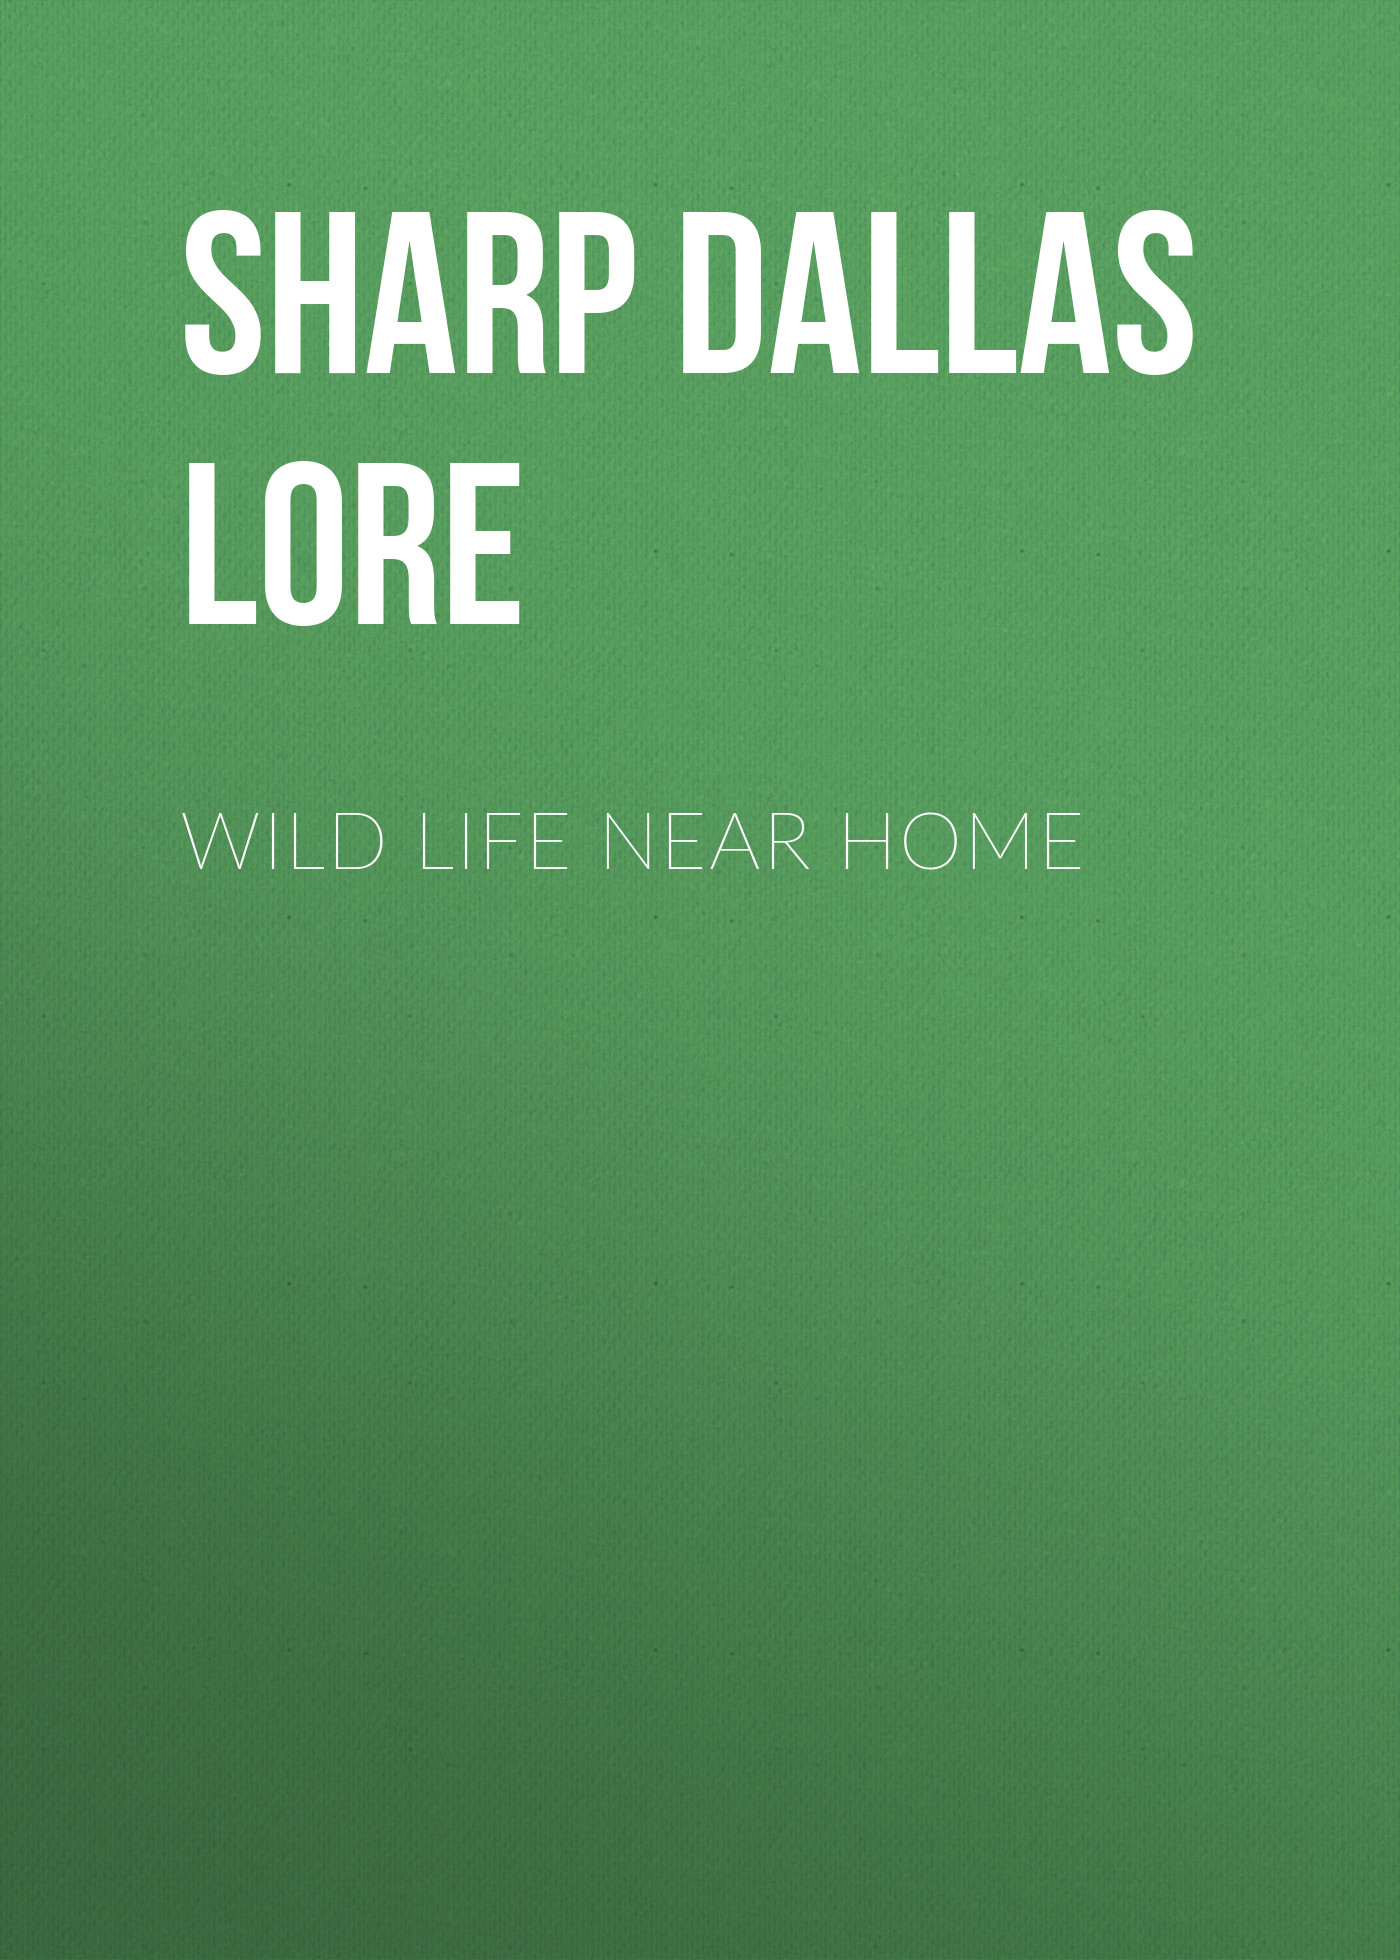 Книга Wild Life Near Home из серии , созданная Dallas Sharp, может относится к жанру Природа и животные, Зарубежная старинная литература, Зарубежная классика. Стоимость книги Wild Life Near Home  с идентификатором 25570167 составляет 0 руб.